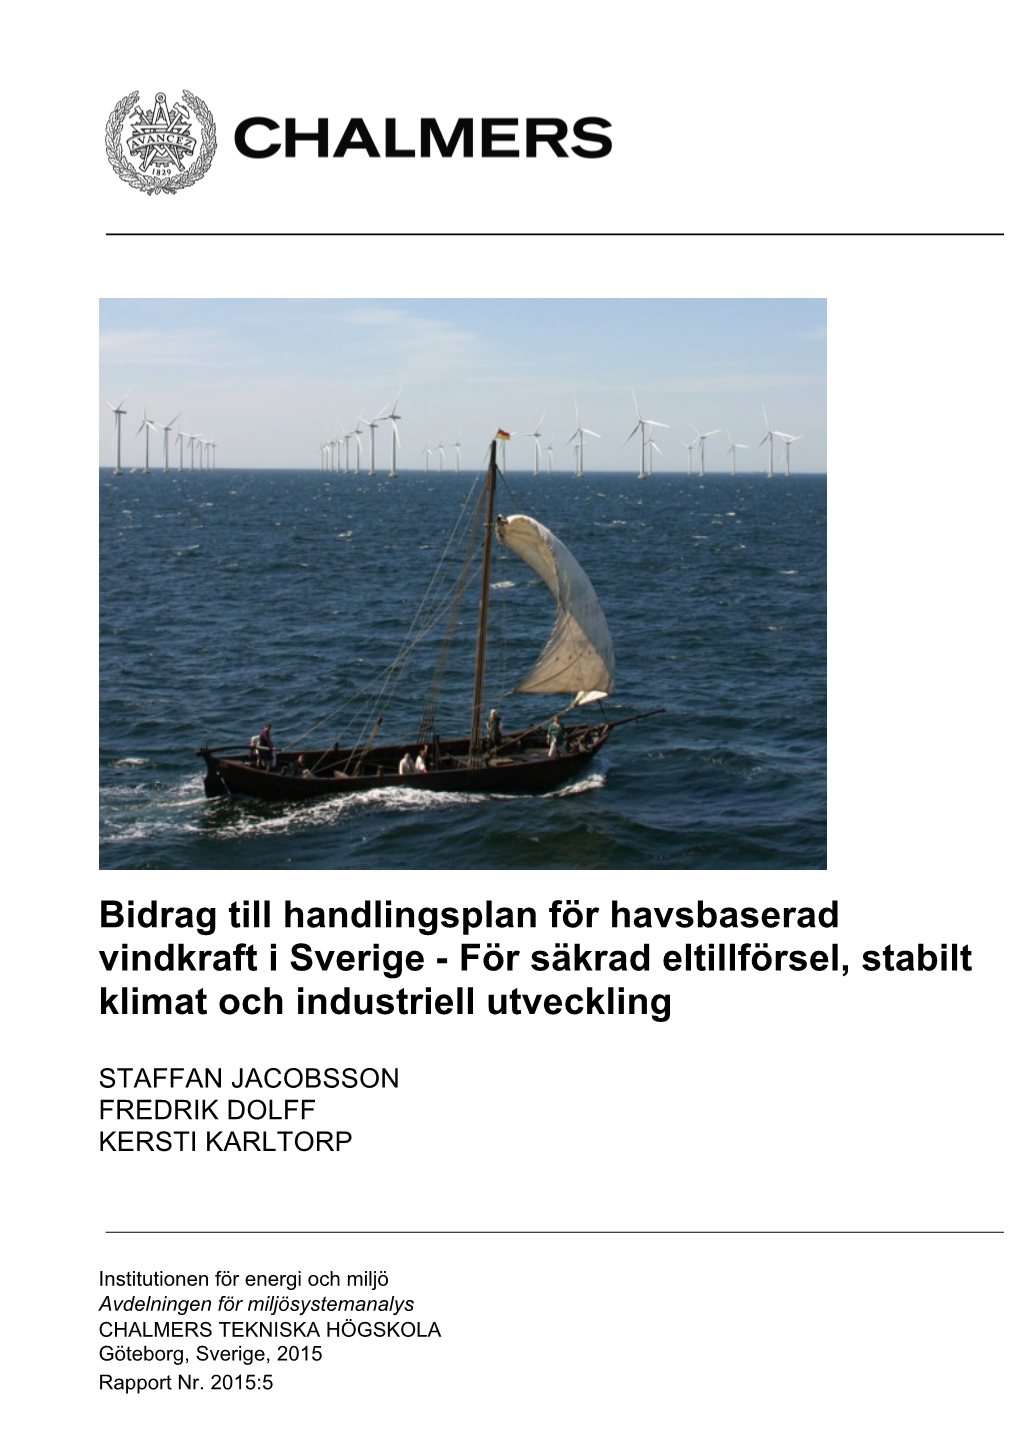 Bidrag Till En Handlingsplan För Havsbaserad Vindkraft I Sverige - För Säkrad Eltillförsel, Stabilt Klimat Och Industriell Utveckling*